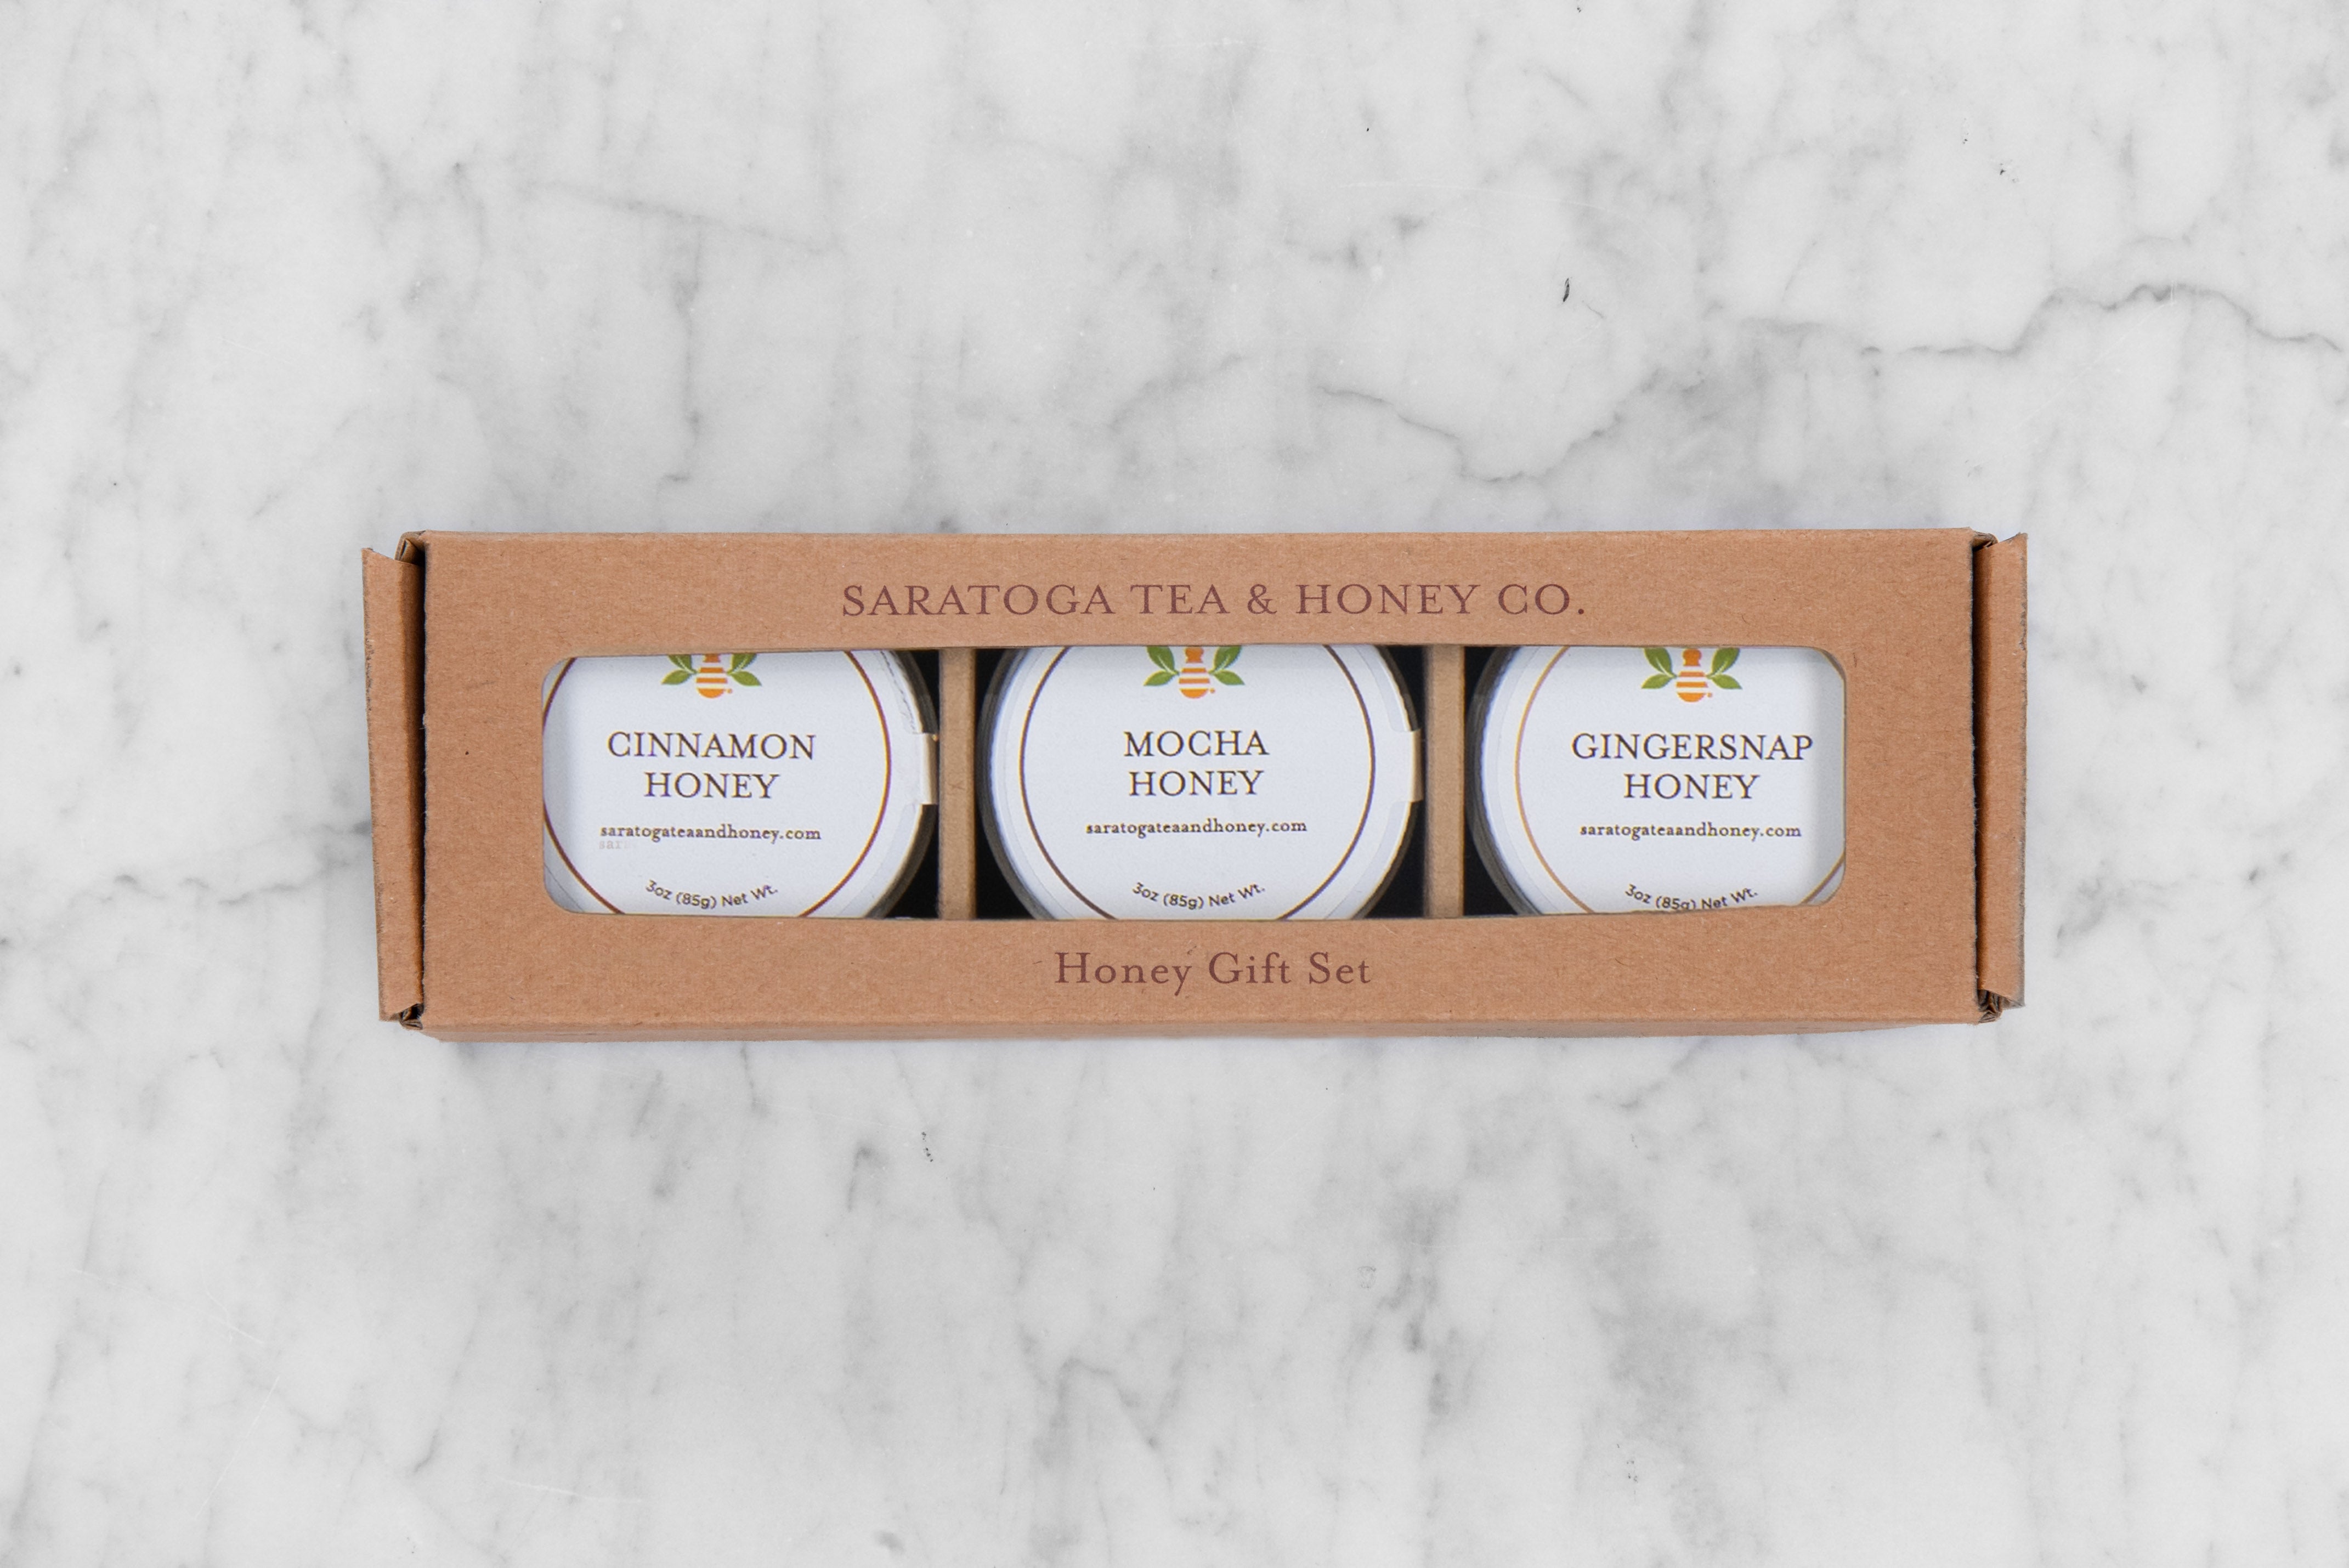 honey three-pack sample set featuring three indulgent honeys: cinnamon, mocha, and gingersnap honey